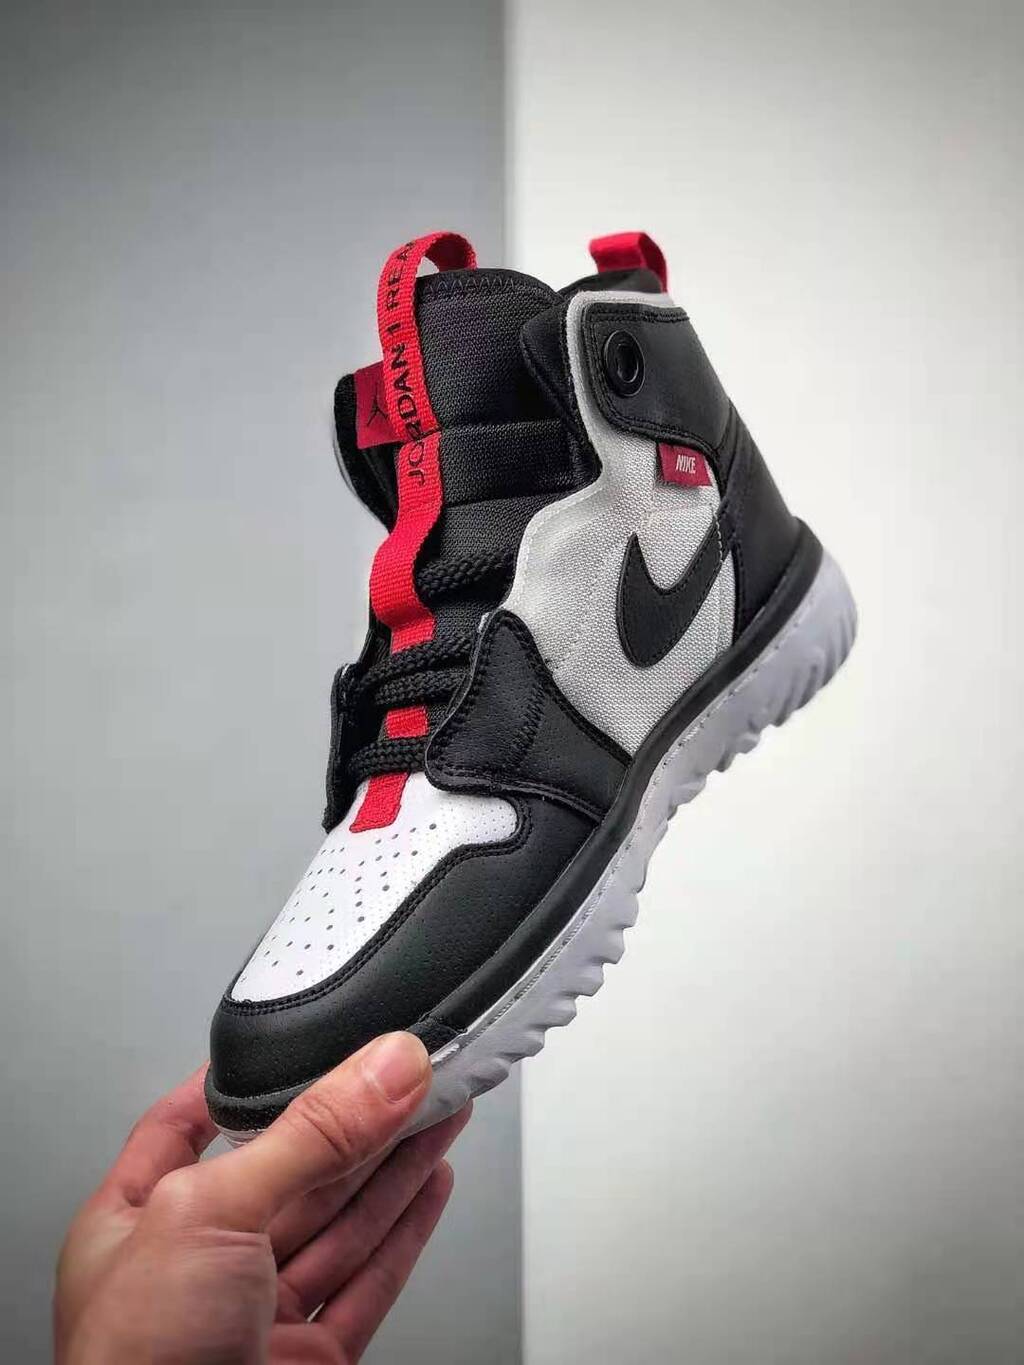 Nike Air Jordan 1 High React